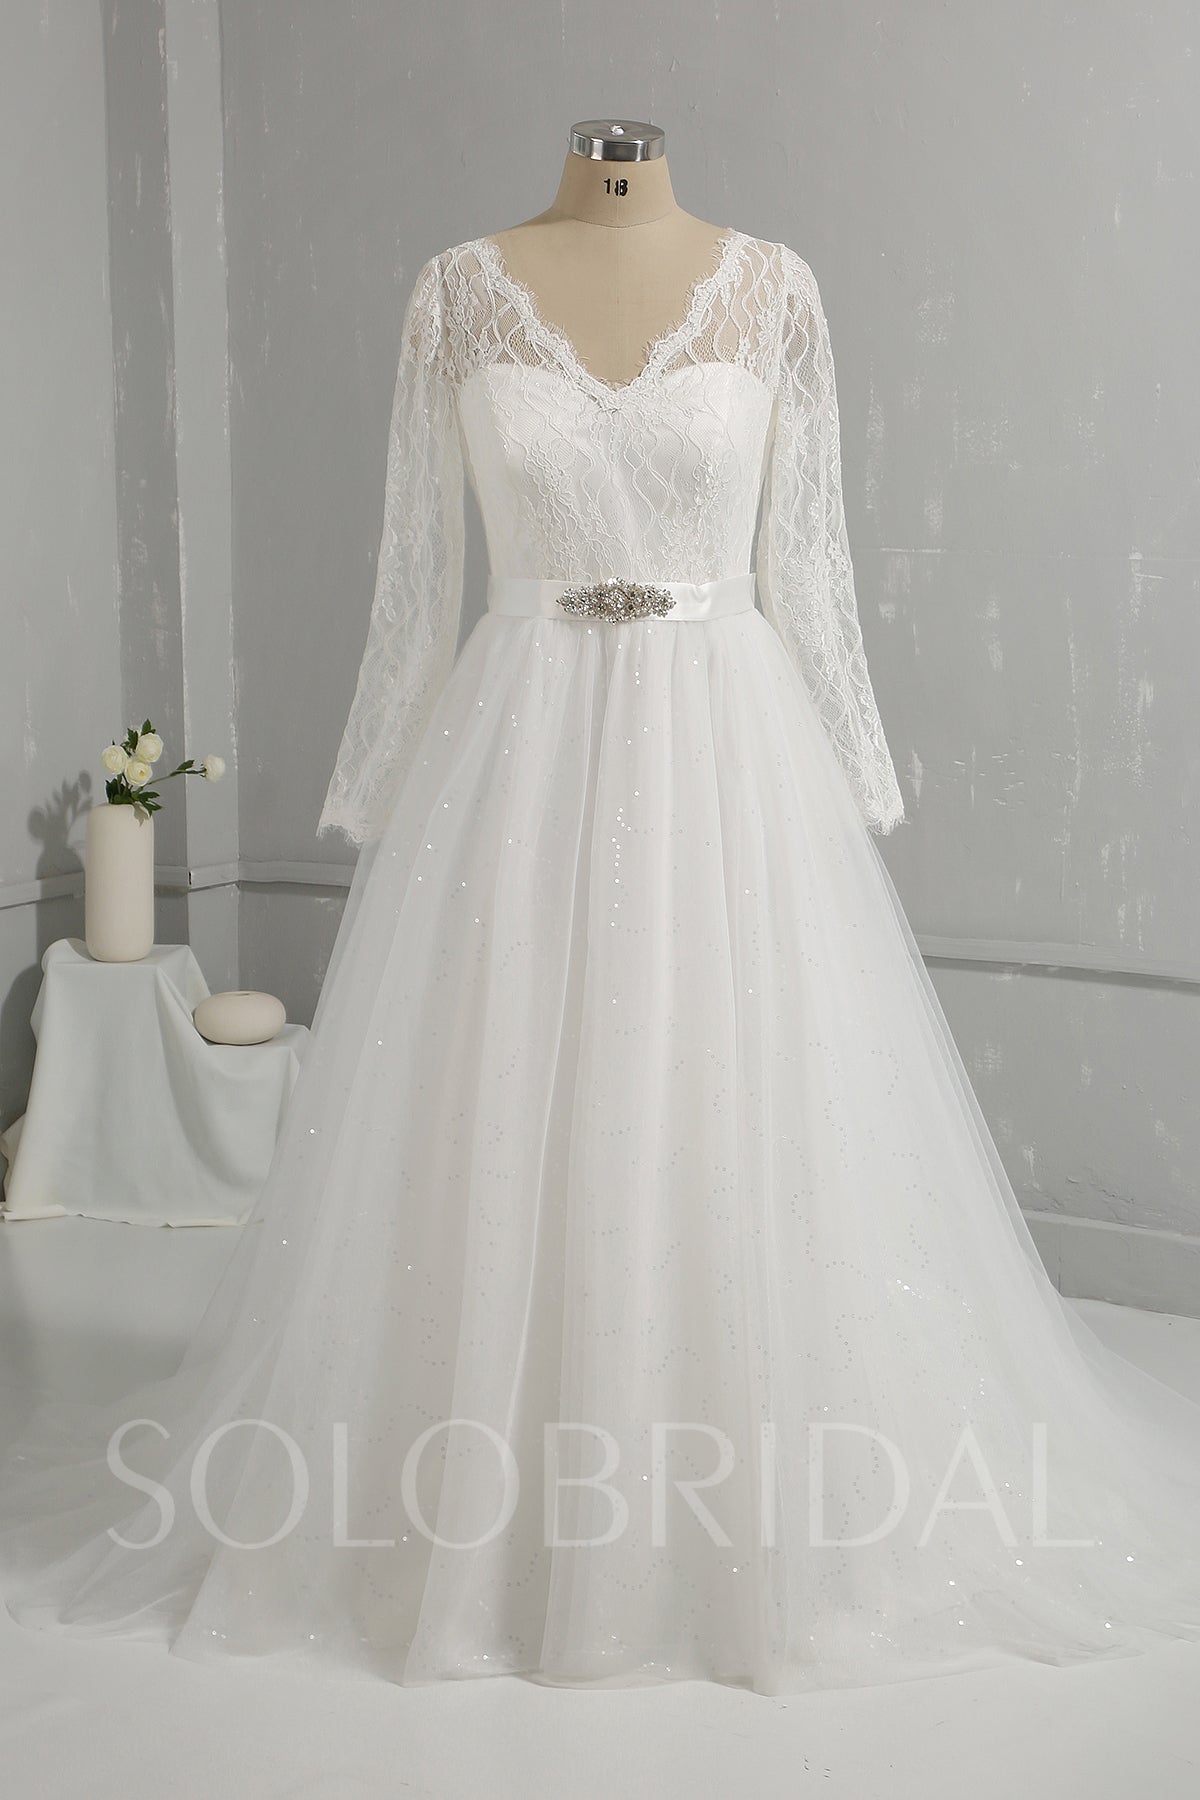 Light Ivory Lace Shiny Tulle Skirt Long Sleeve Wedding Dress